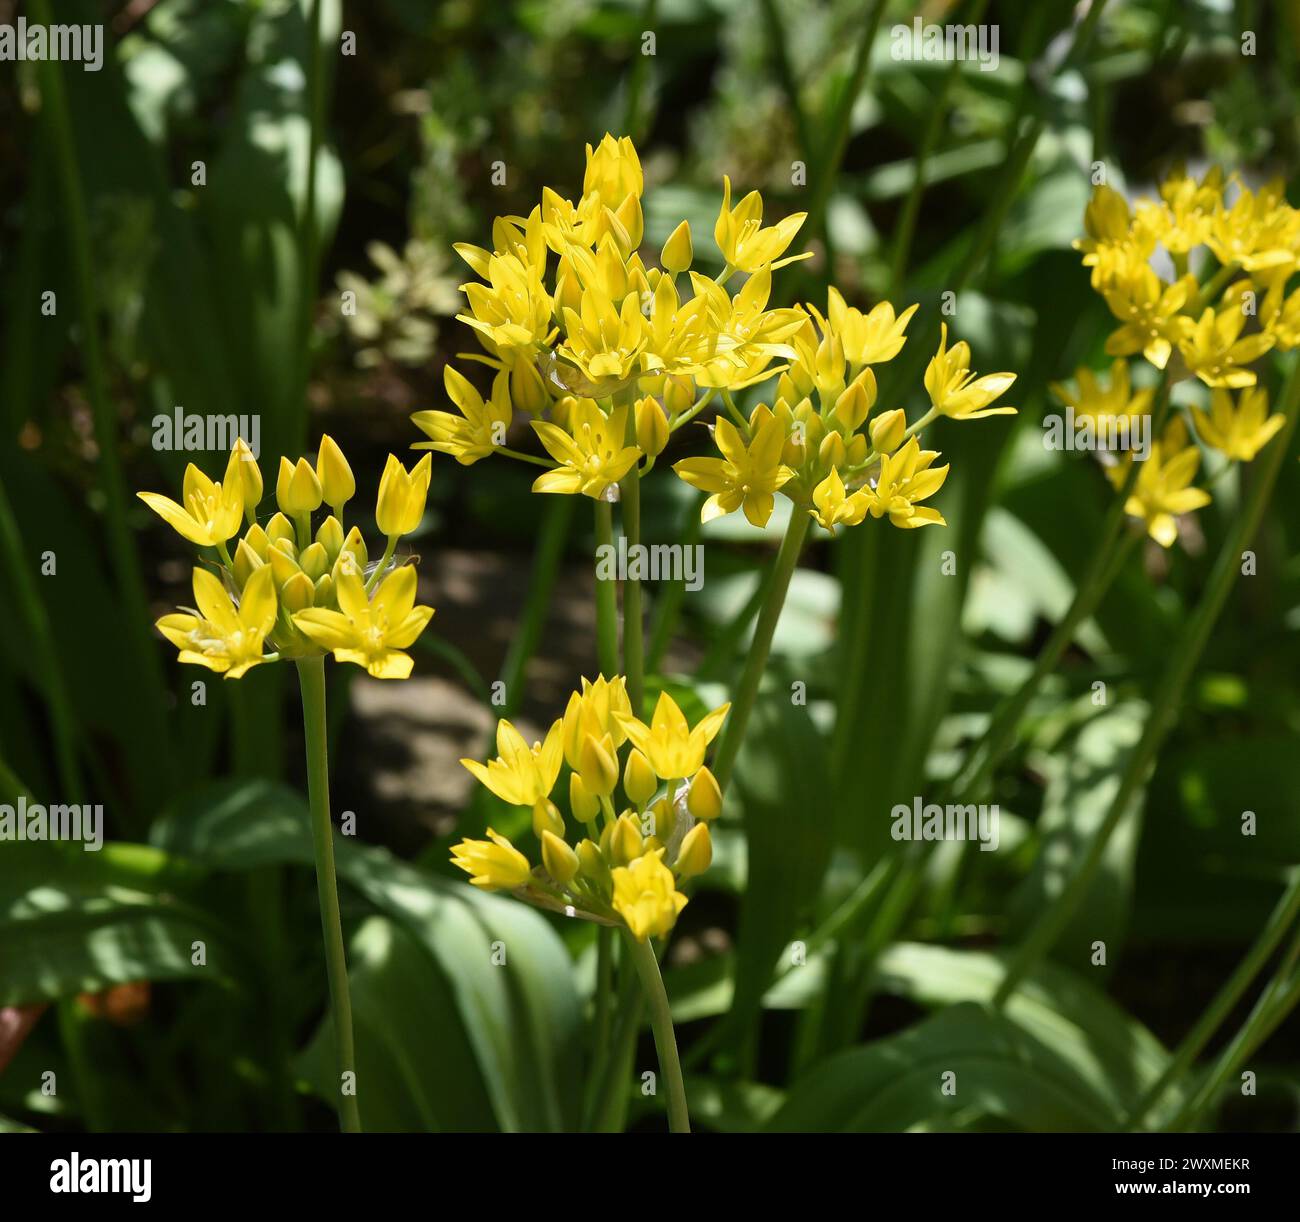 Goldlauch, Zierlauch, Allium moly, ist eine sehr dekorative und imposante Pflanze für den Garten mit schoenengelben Blueten. Goldener Knoblauch, Ornamenta Stockfoto